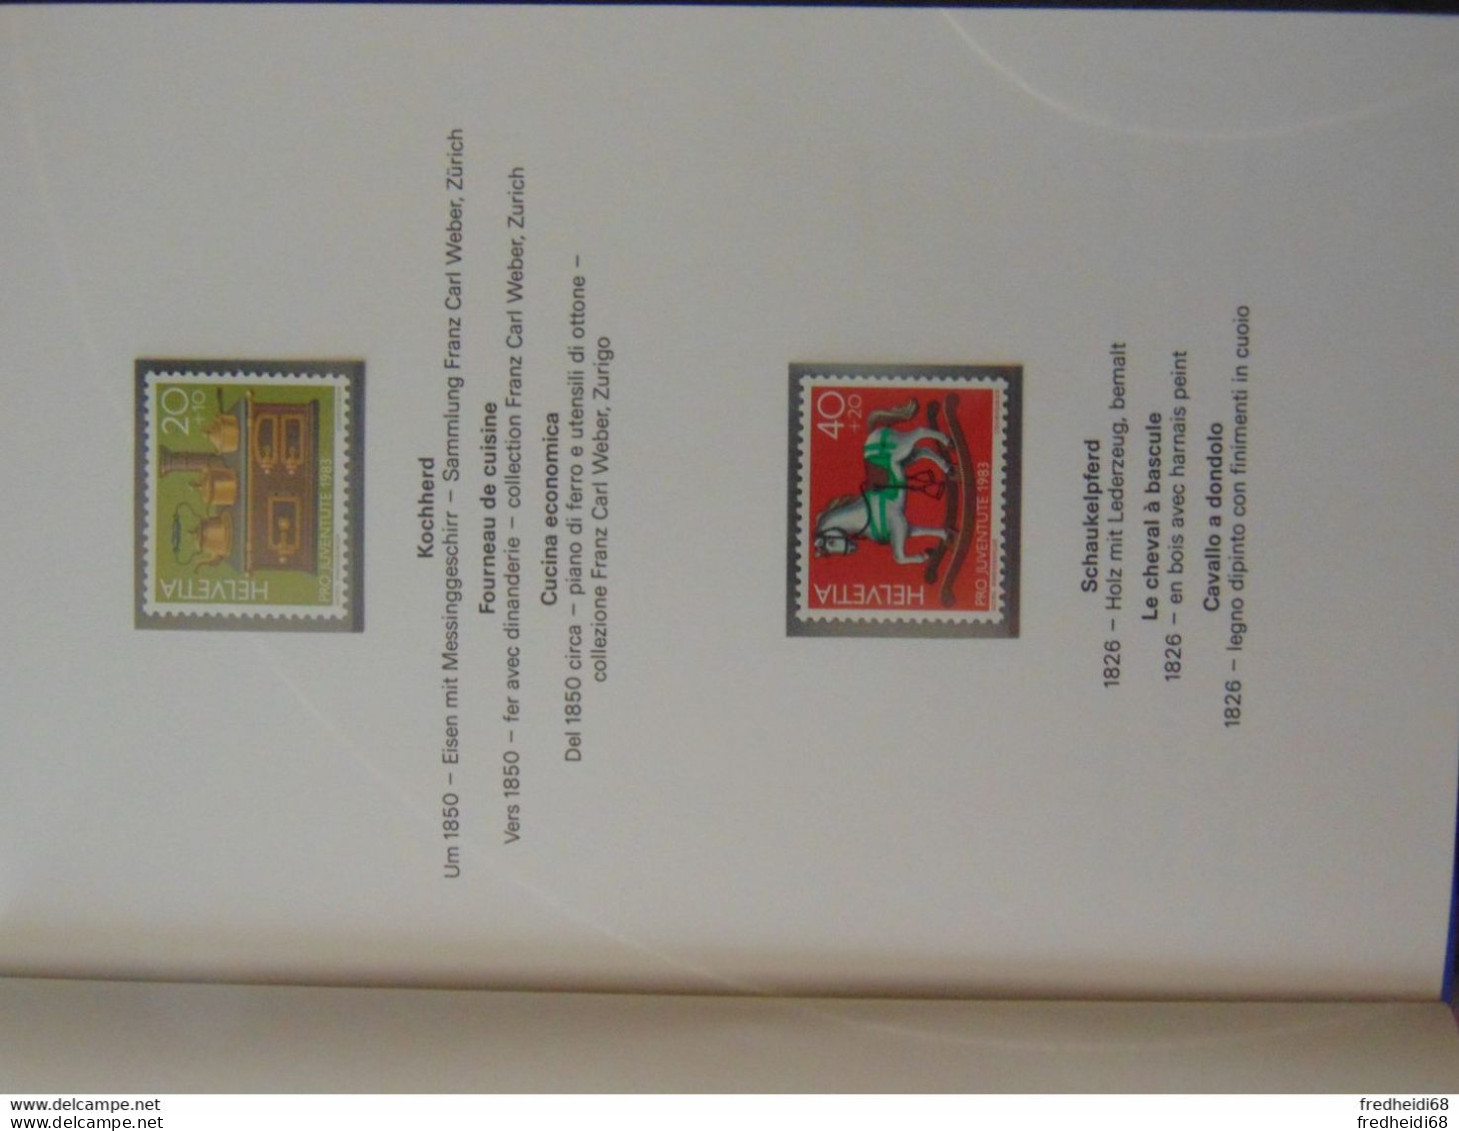 Magnifique Petit Livret Souvenir Offert Par Les PTT Suisses Couvrant Les Années 1983 Et 1986 (14 Photos) - Covers & Documents